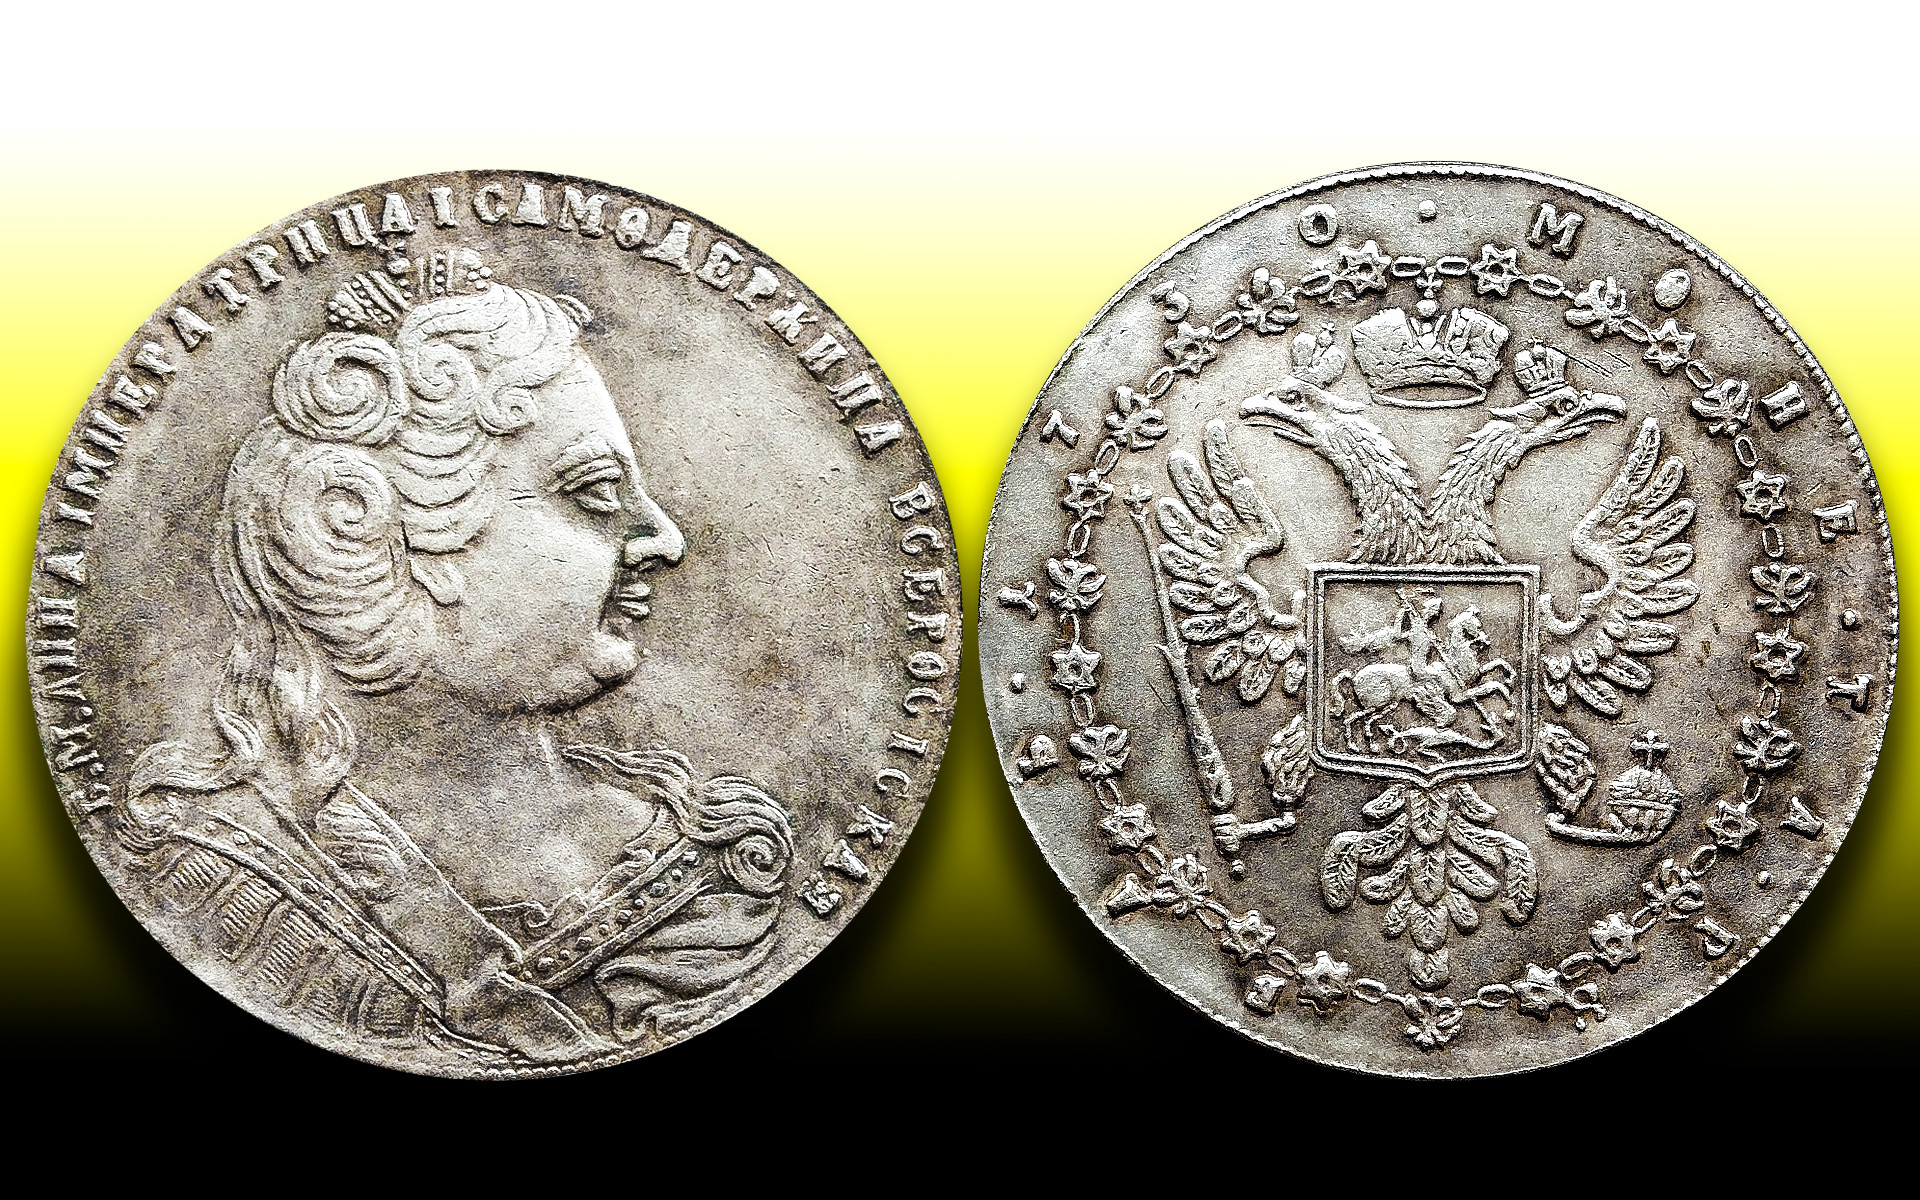 ロシア帝国の最も希少で高価なコイン5つ - ロシア・ビヨンド